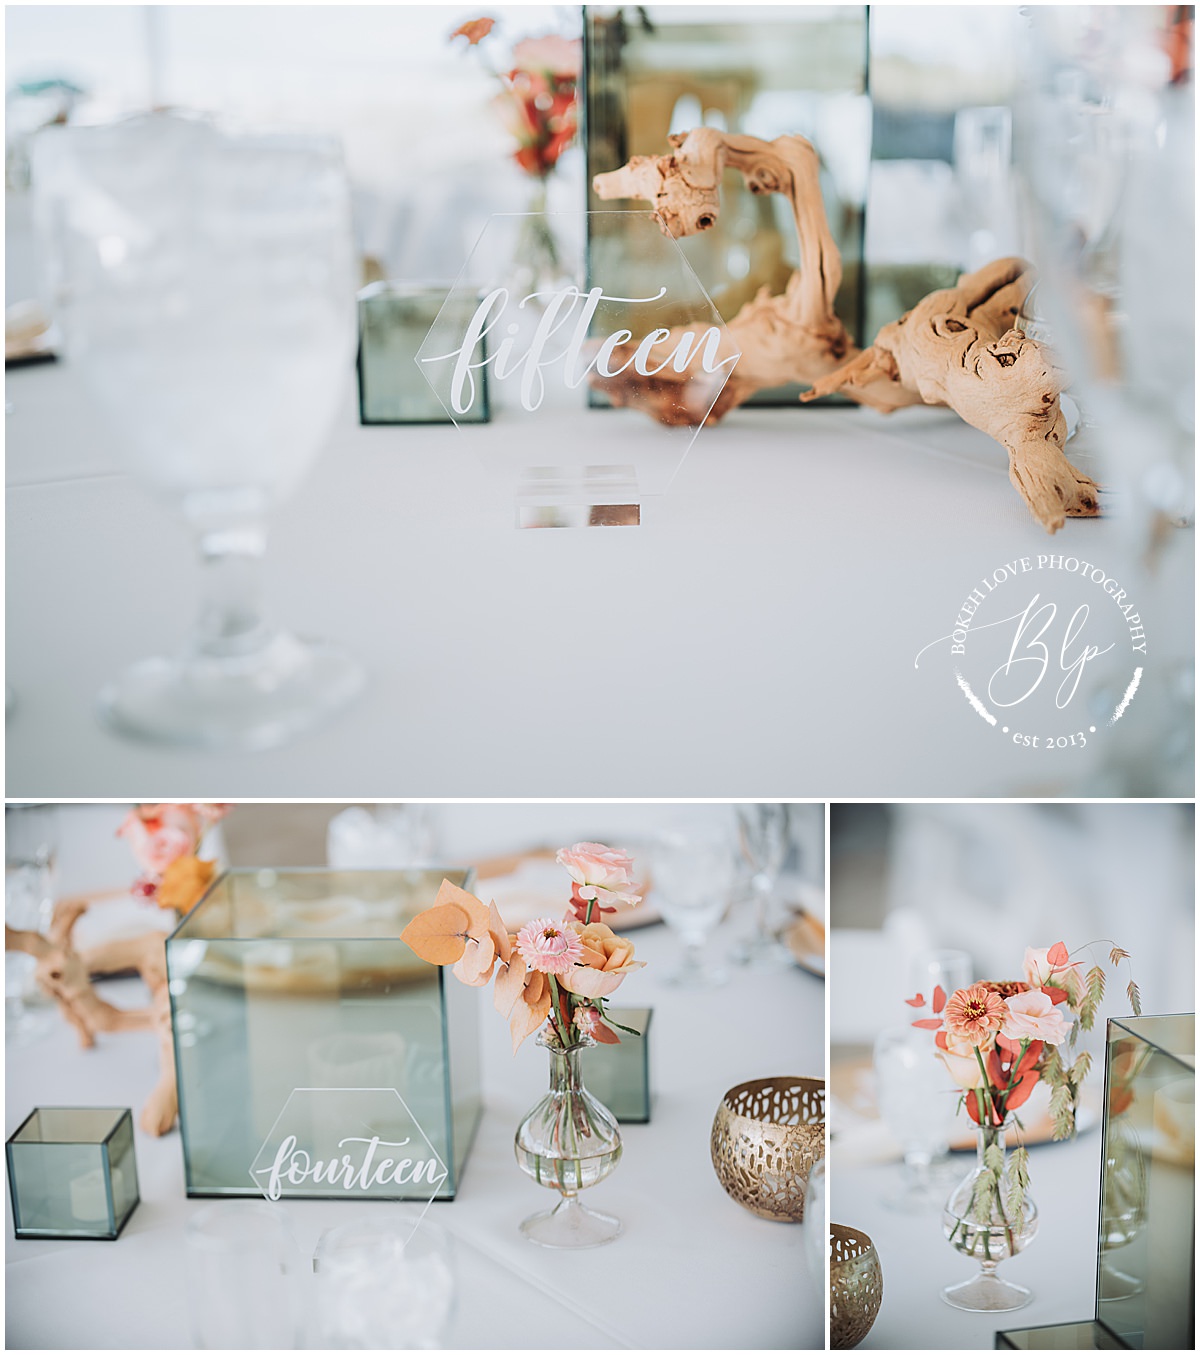 Bokeh Love Photography, Deauville Inn Wedding, wedding centerpiece details